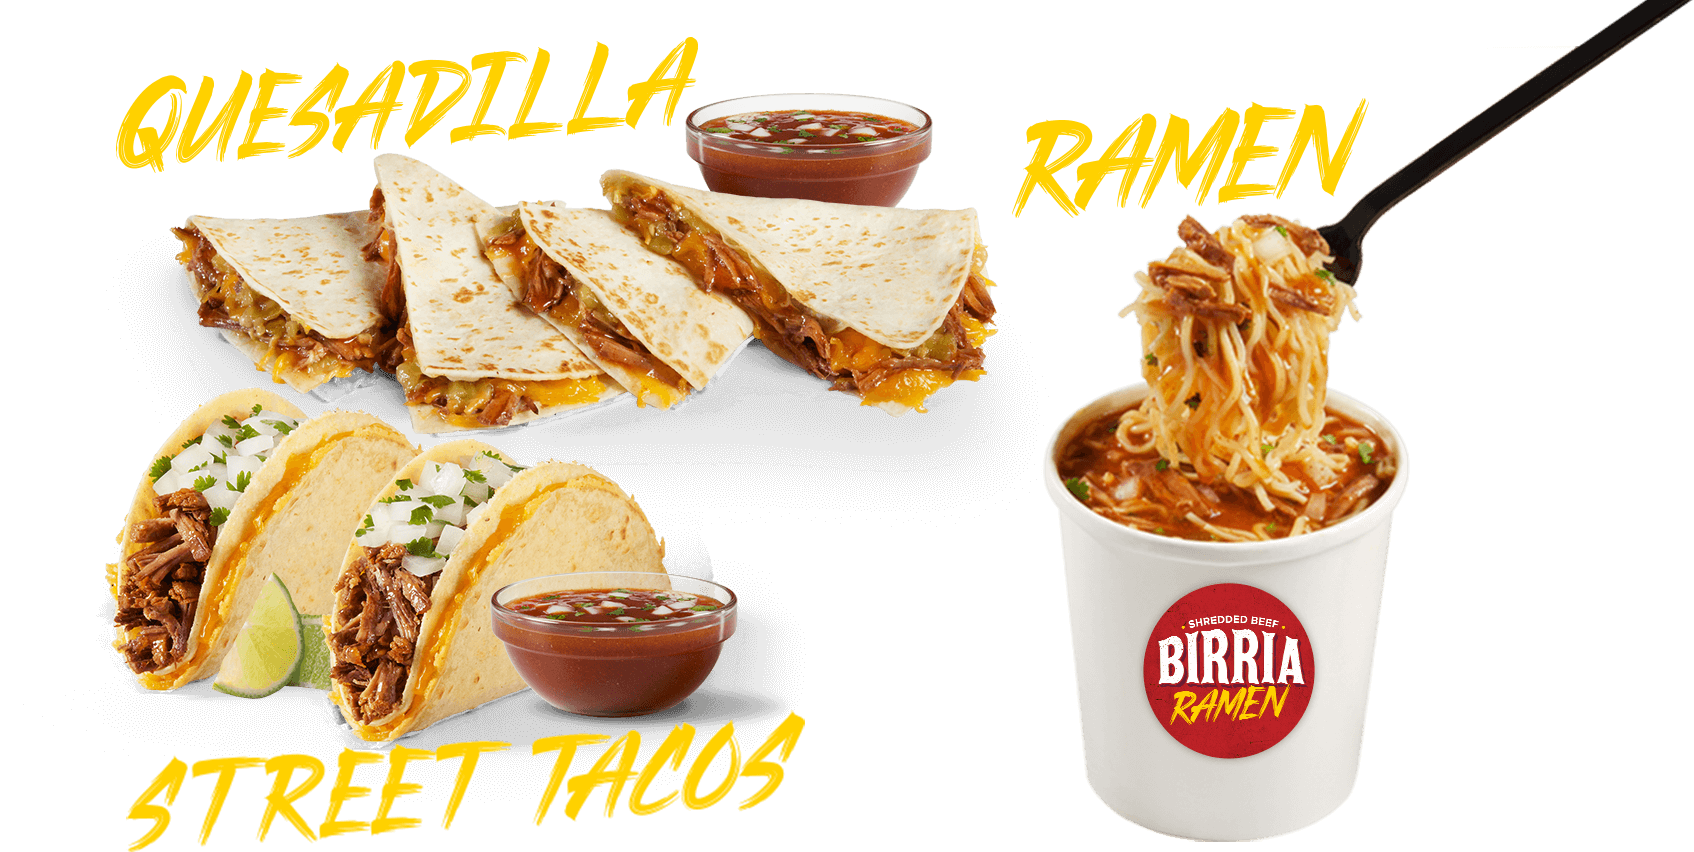 Birria Tacos, Quesadilla, and Ramen